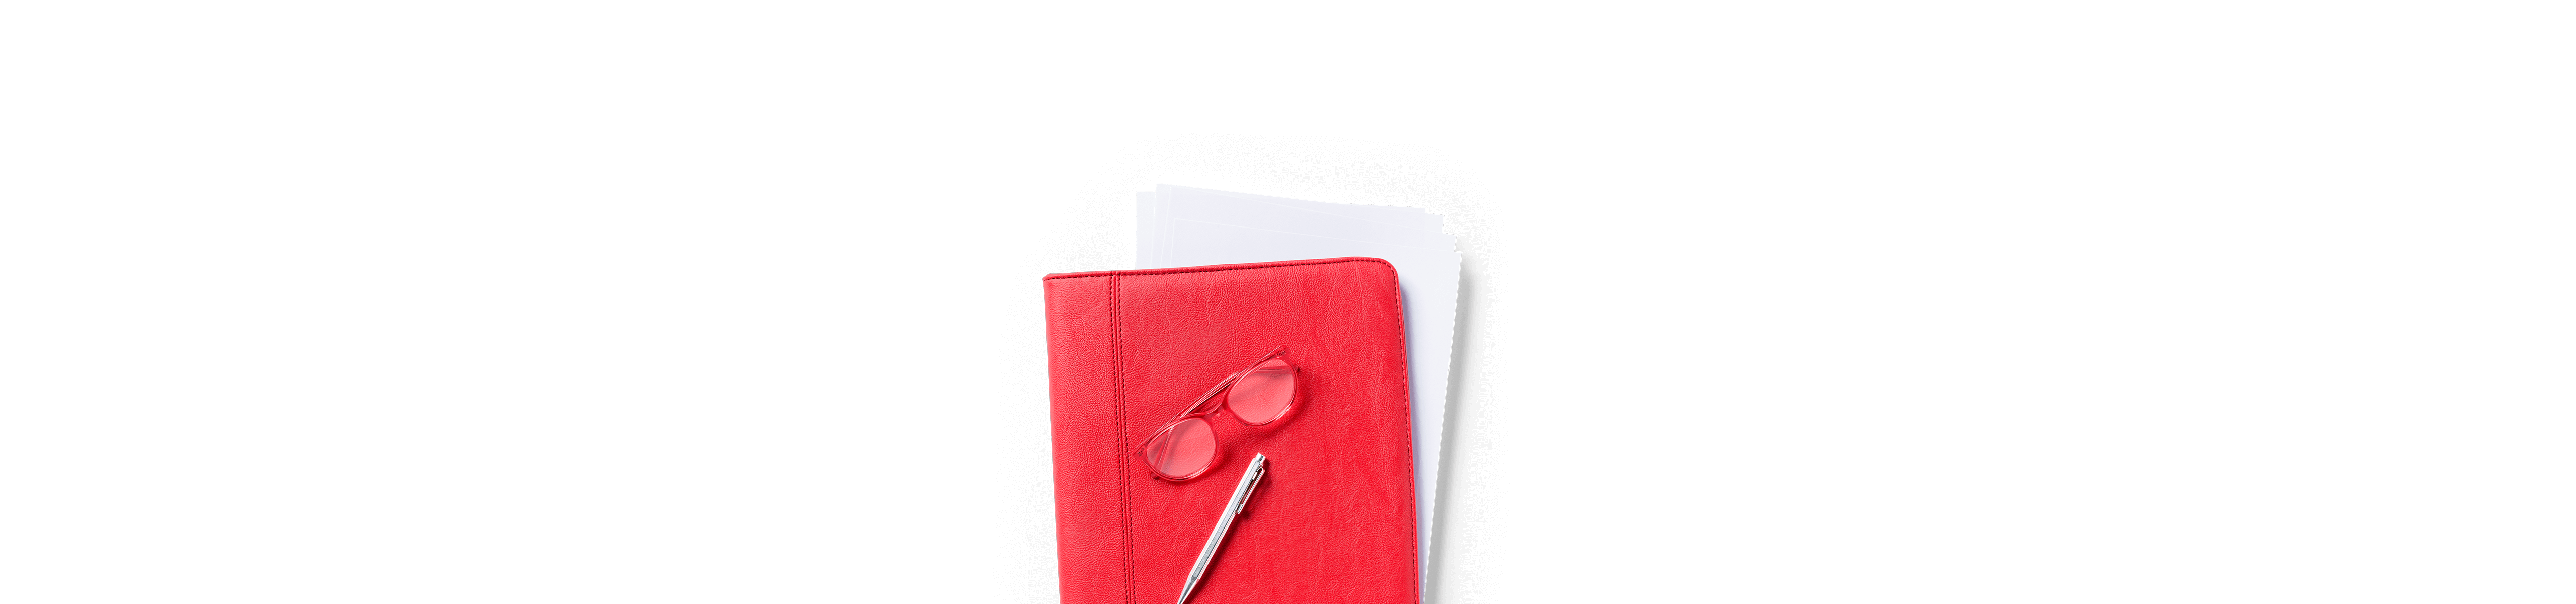 Rote Mappe mit Formularen, Brille und Stift